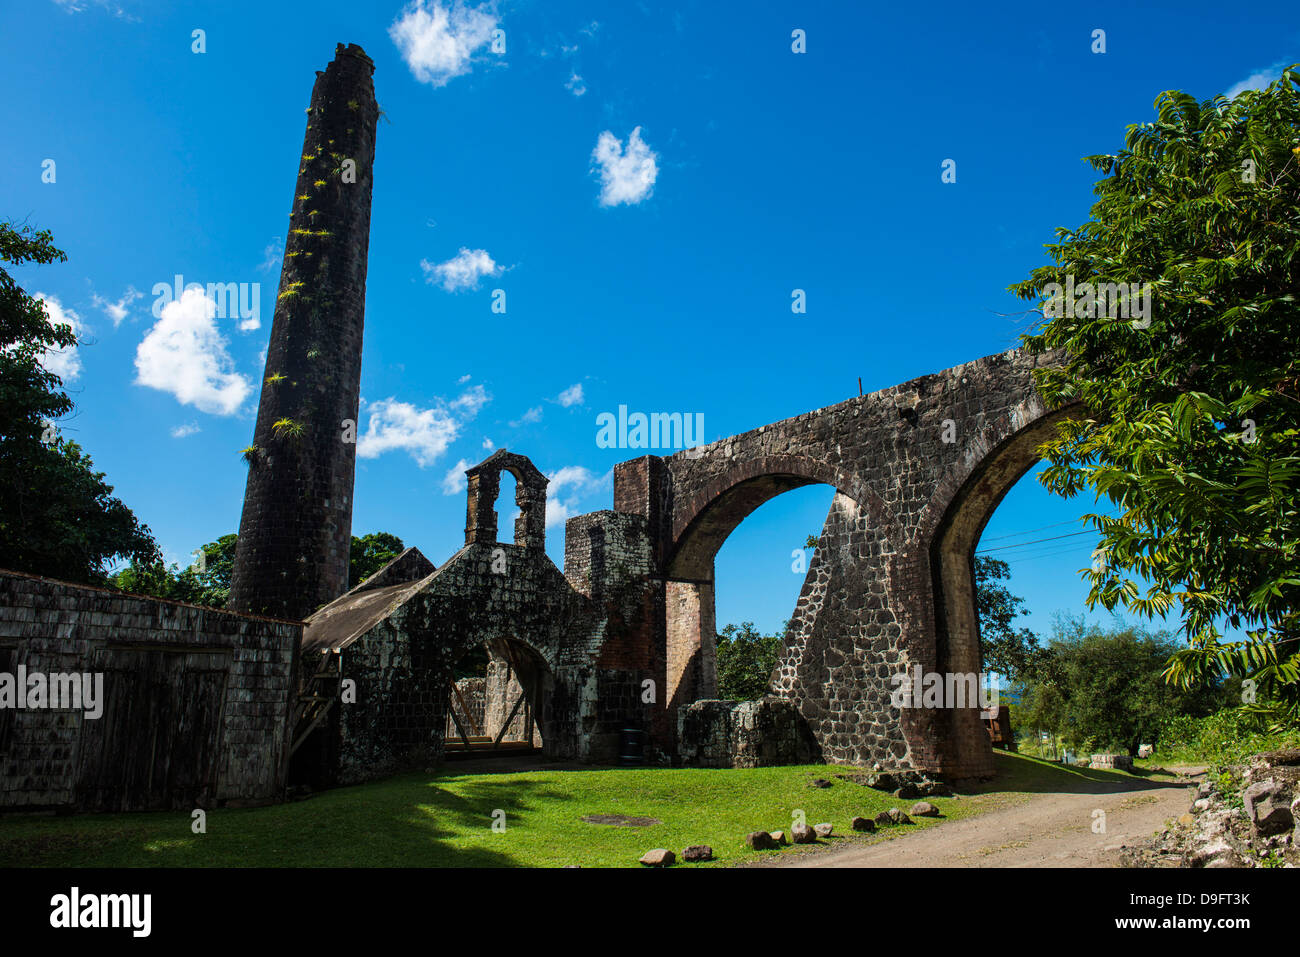 Ruines d'un vieux moulin, Saint Kitt, Saint Kitts et Nevis, Iles sous le vent, Antilles, Caraïbes Banque D'Images